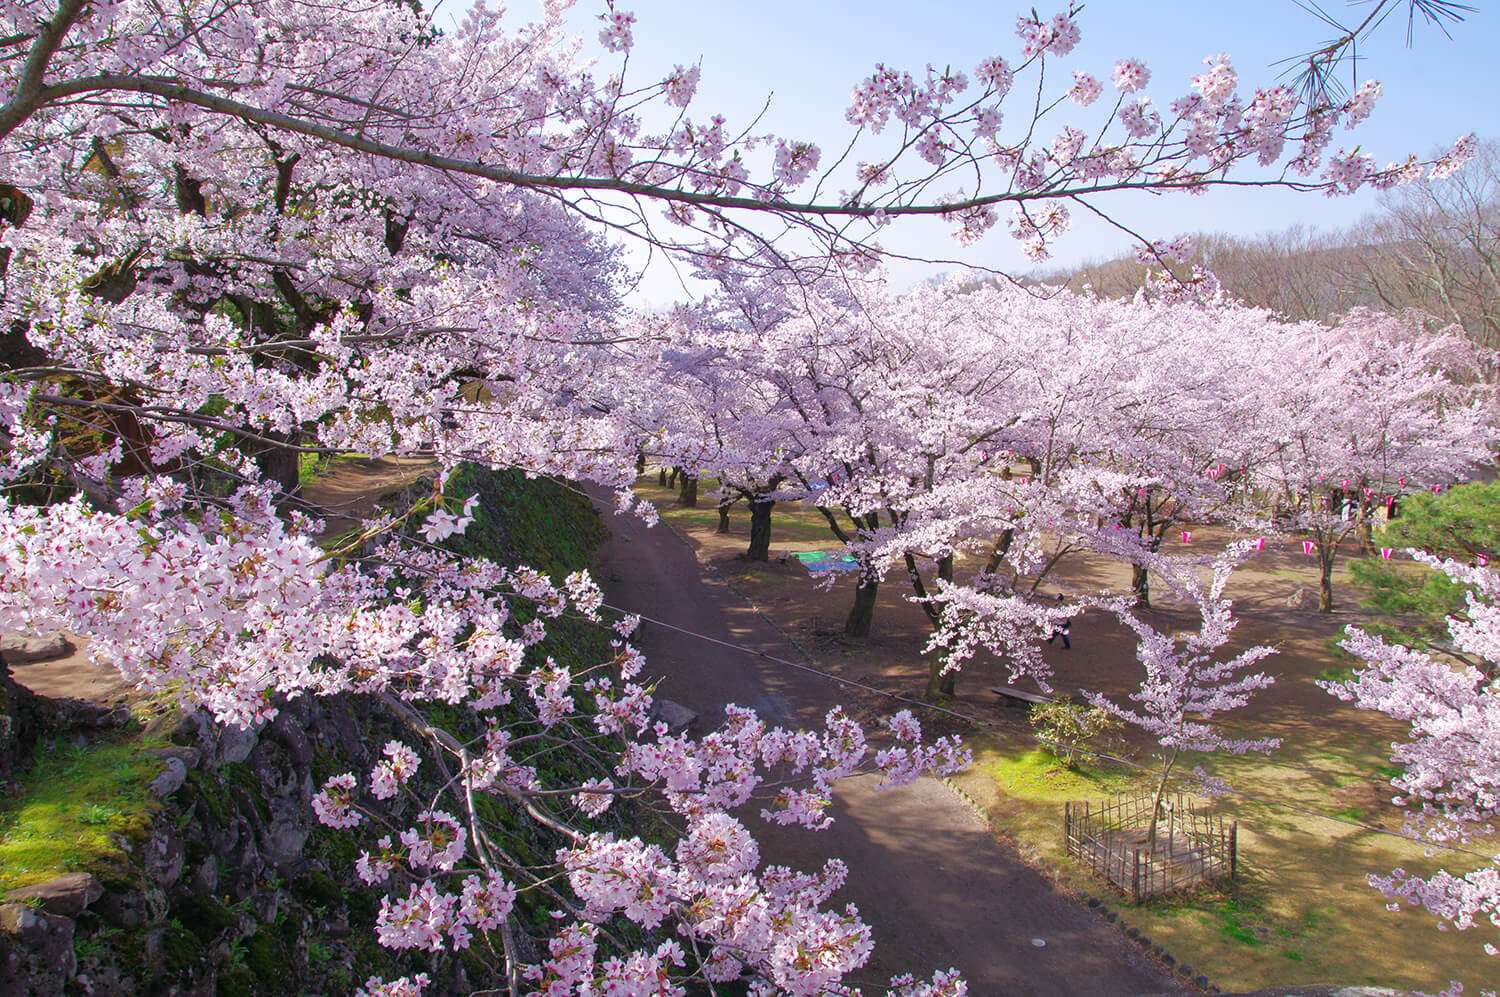 石垣の上からは、馬場を埋め尽くす桜を眼下に見ることができ、「桜の雲海」が望める